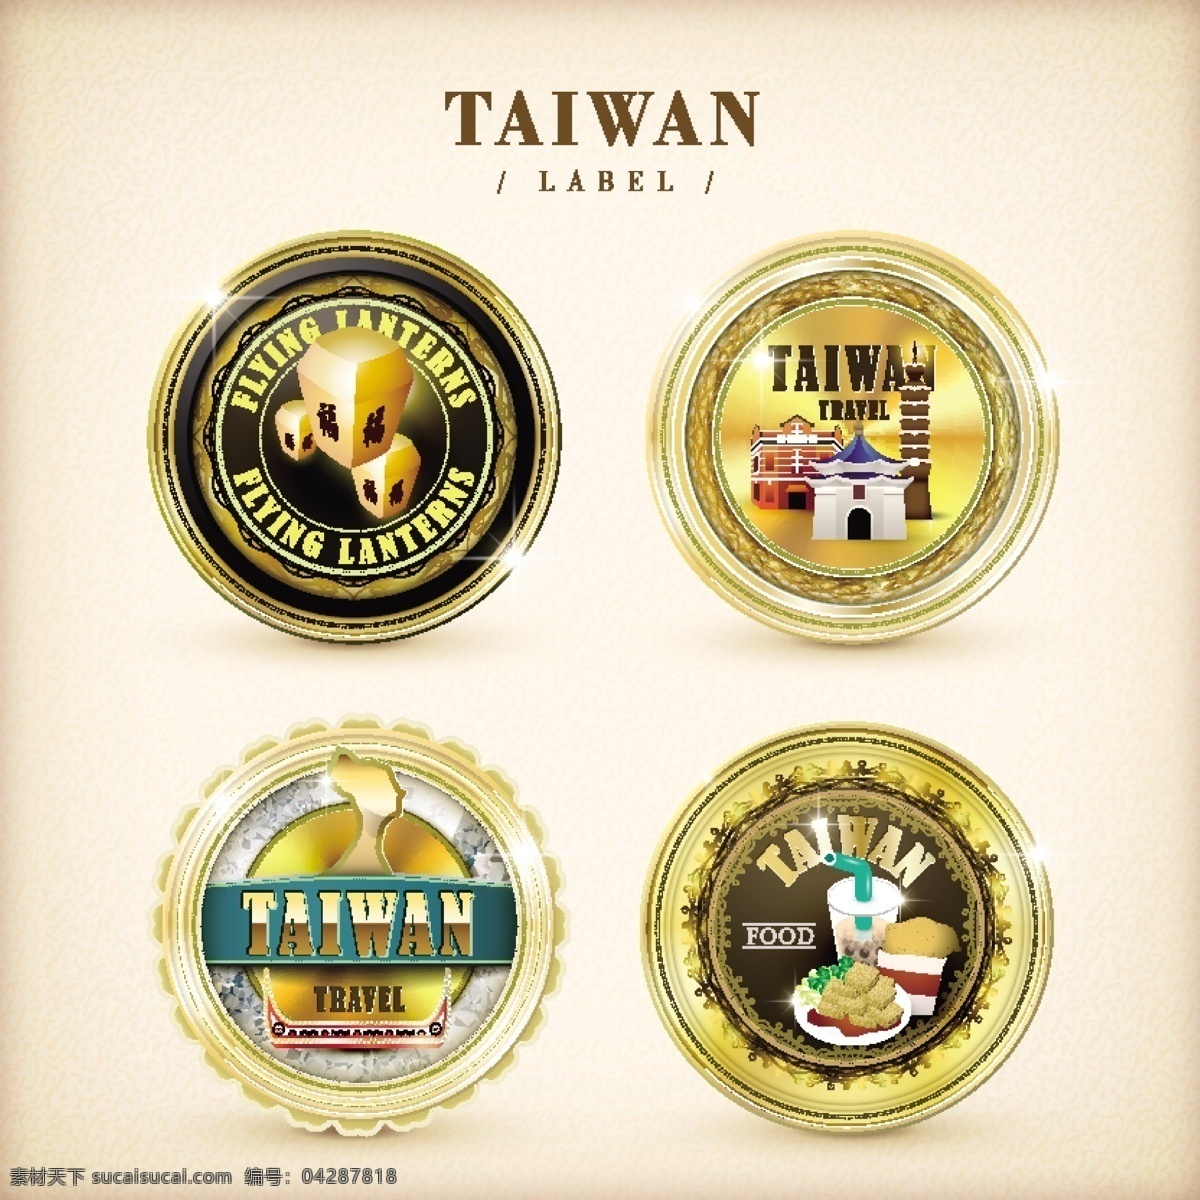 台湾旅游标志 标志 台湾旅游 epd 金色标志 标签 徽章 金色徽章 白色